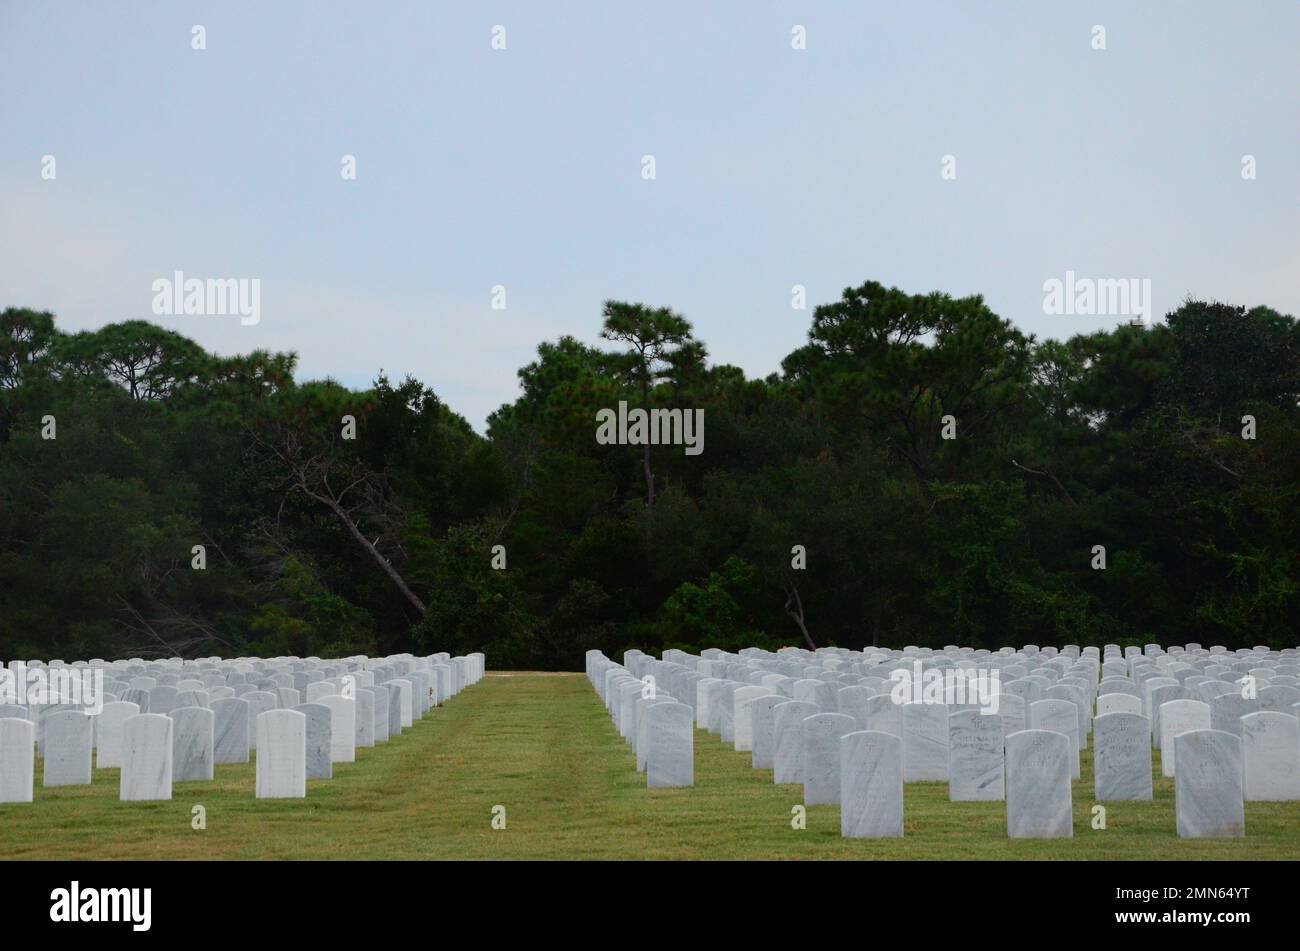 Abschnitt 55 in der Nähe der Einlieferung A auf dem barrancas Nationalfriedhof. Seit 2022 ist der Barrancas National Cemetery, der sich auf NAS Pensacola befindet, der Rastplatz für über 40.000 Personen. Stockfoto